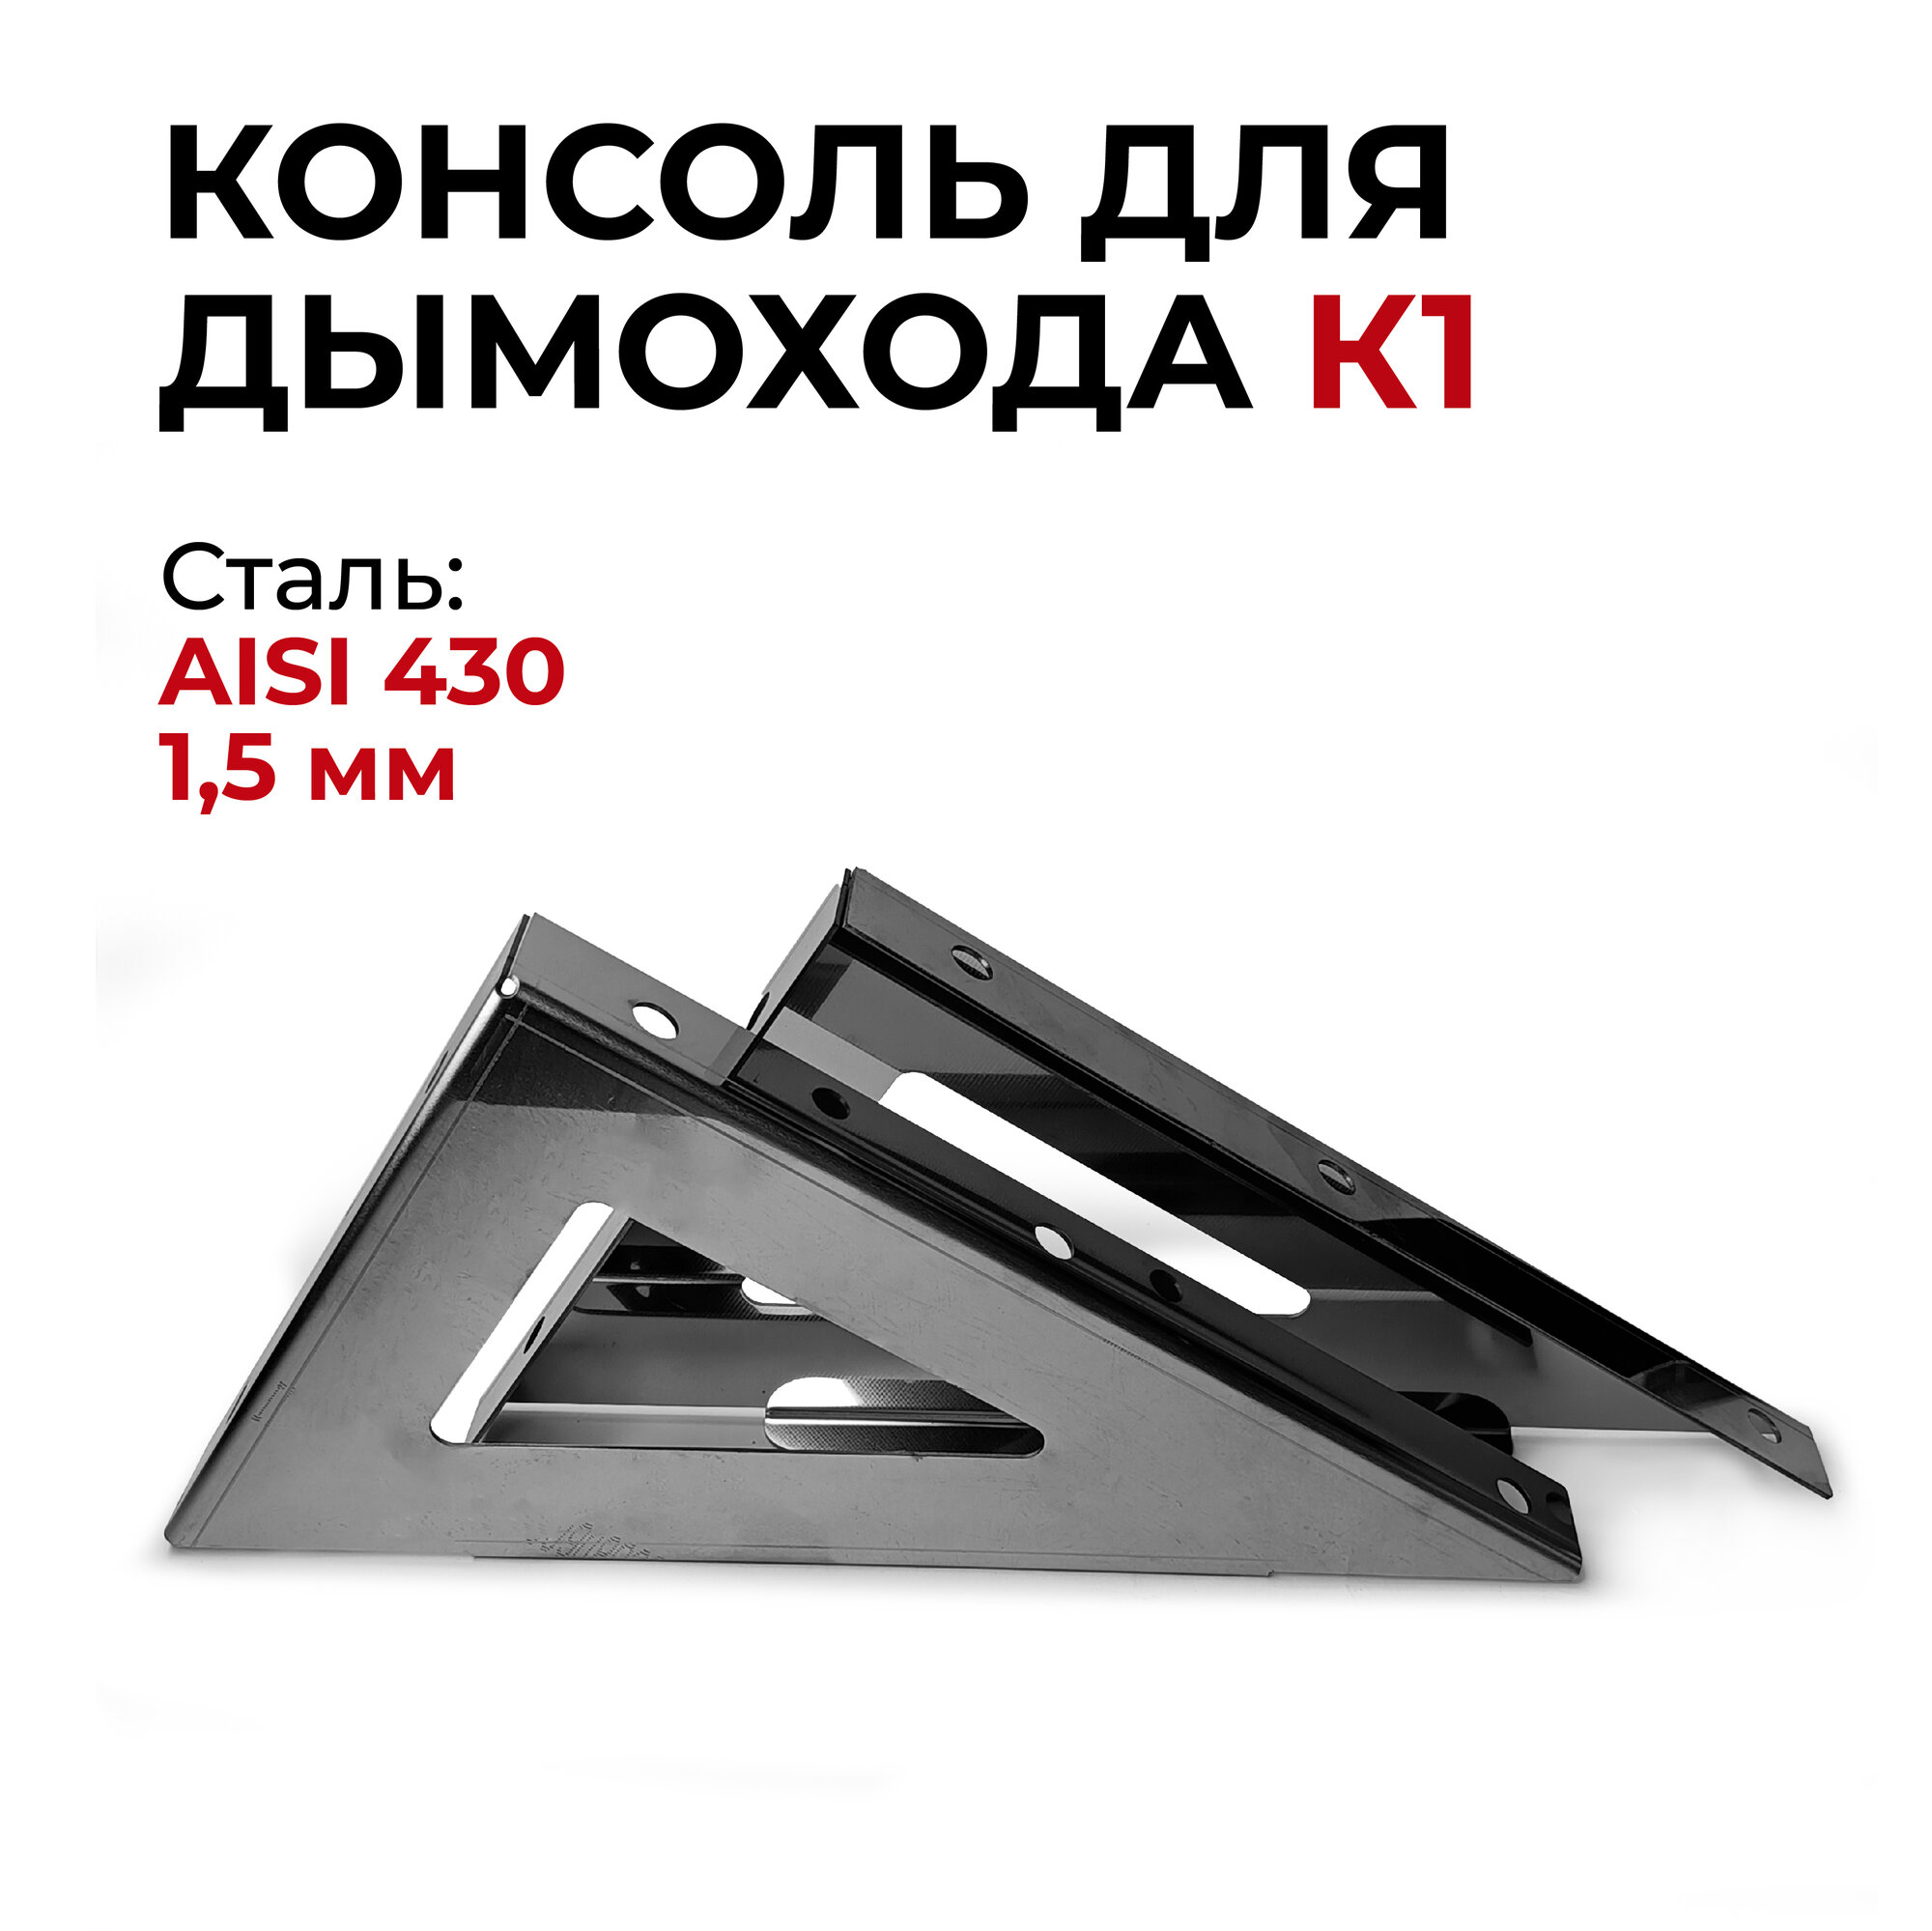 Консоль для дымохода К1 нержавеющая сталь AISI430 1,5 мм "Прок"